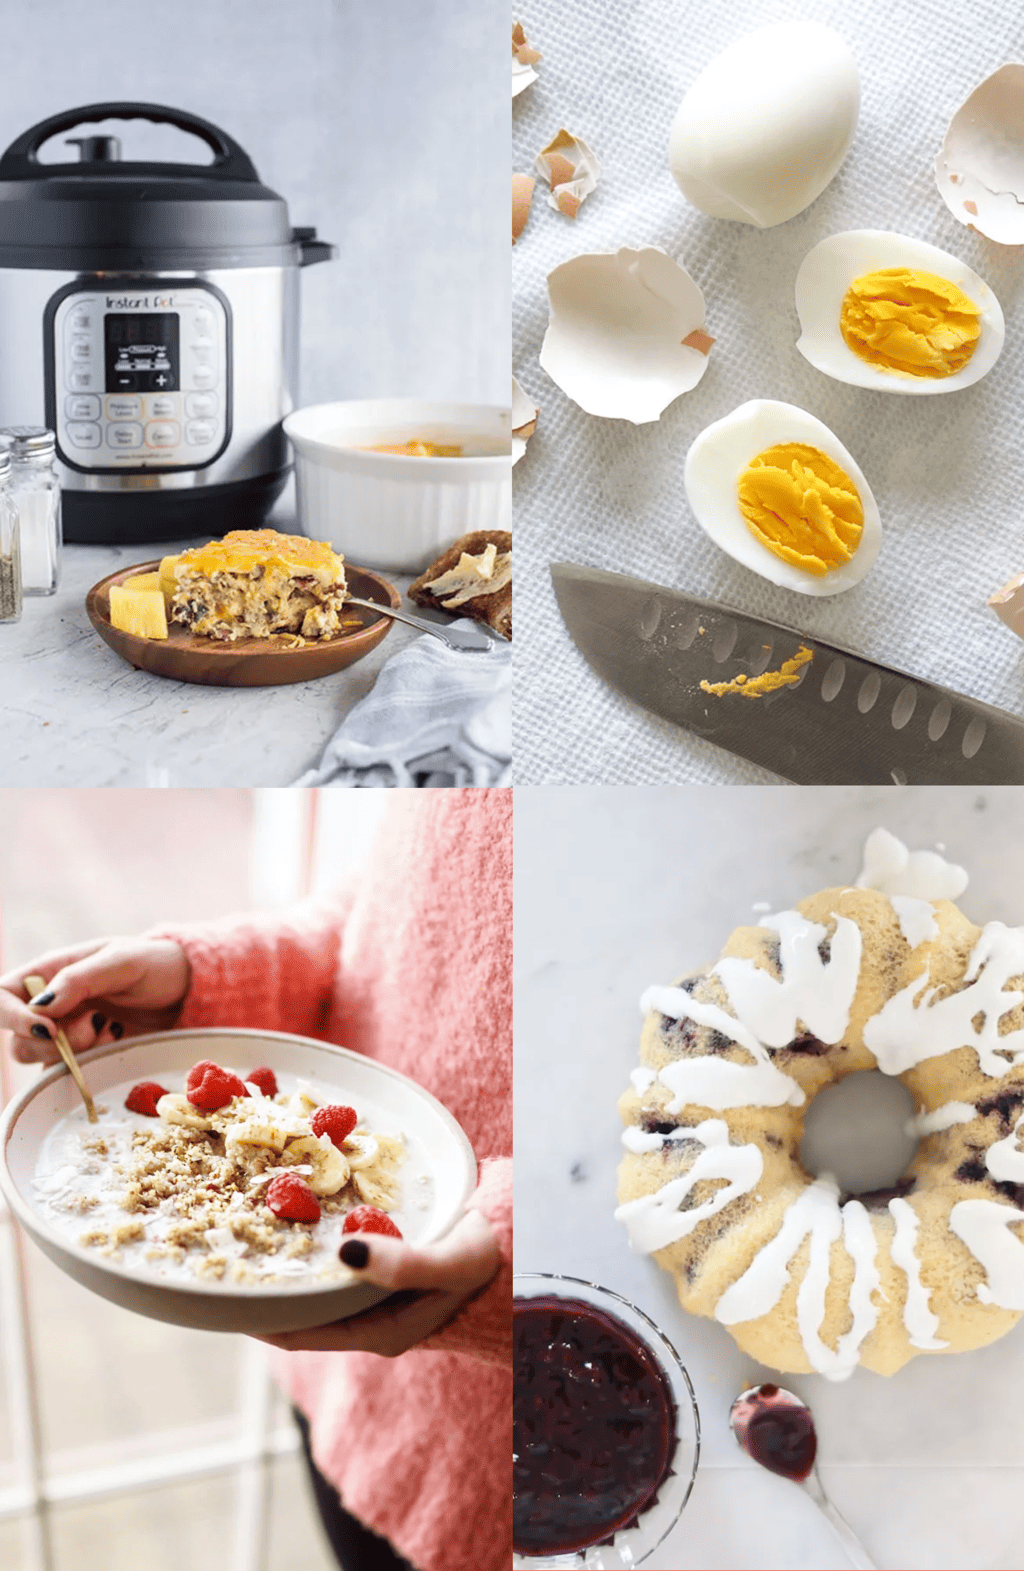 https://sugarandcloth.com/wp-content/uploads/2022/05/Best-Instant-Pot-Breakfast-Recipes.png